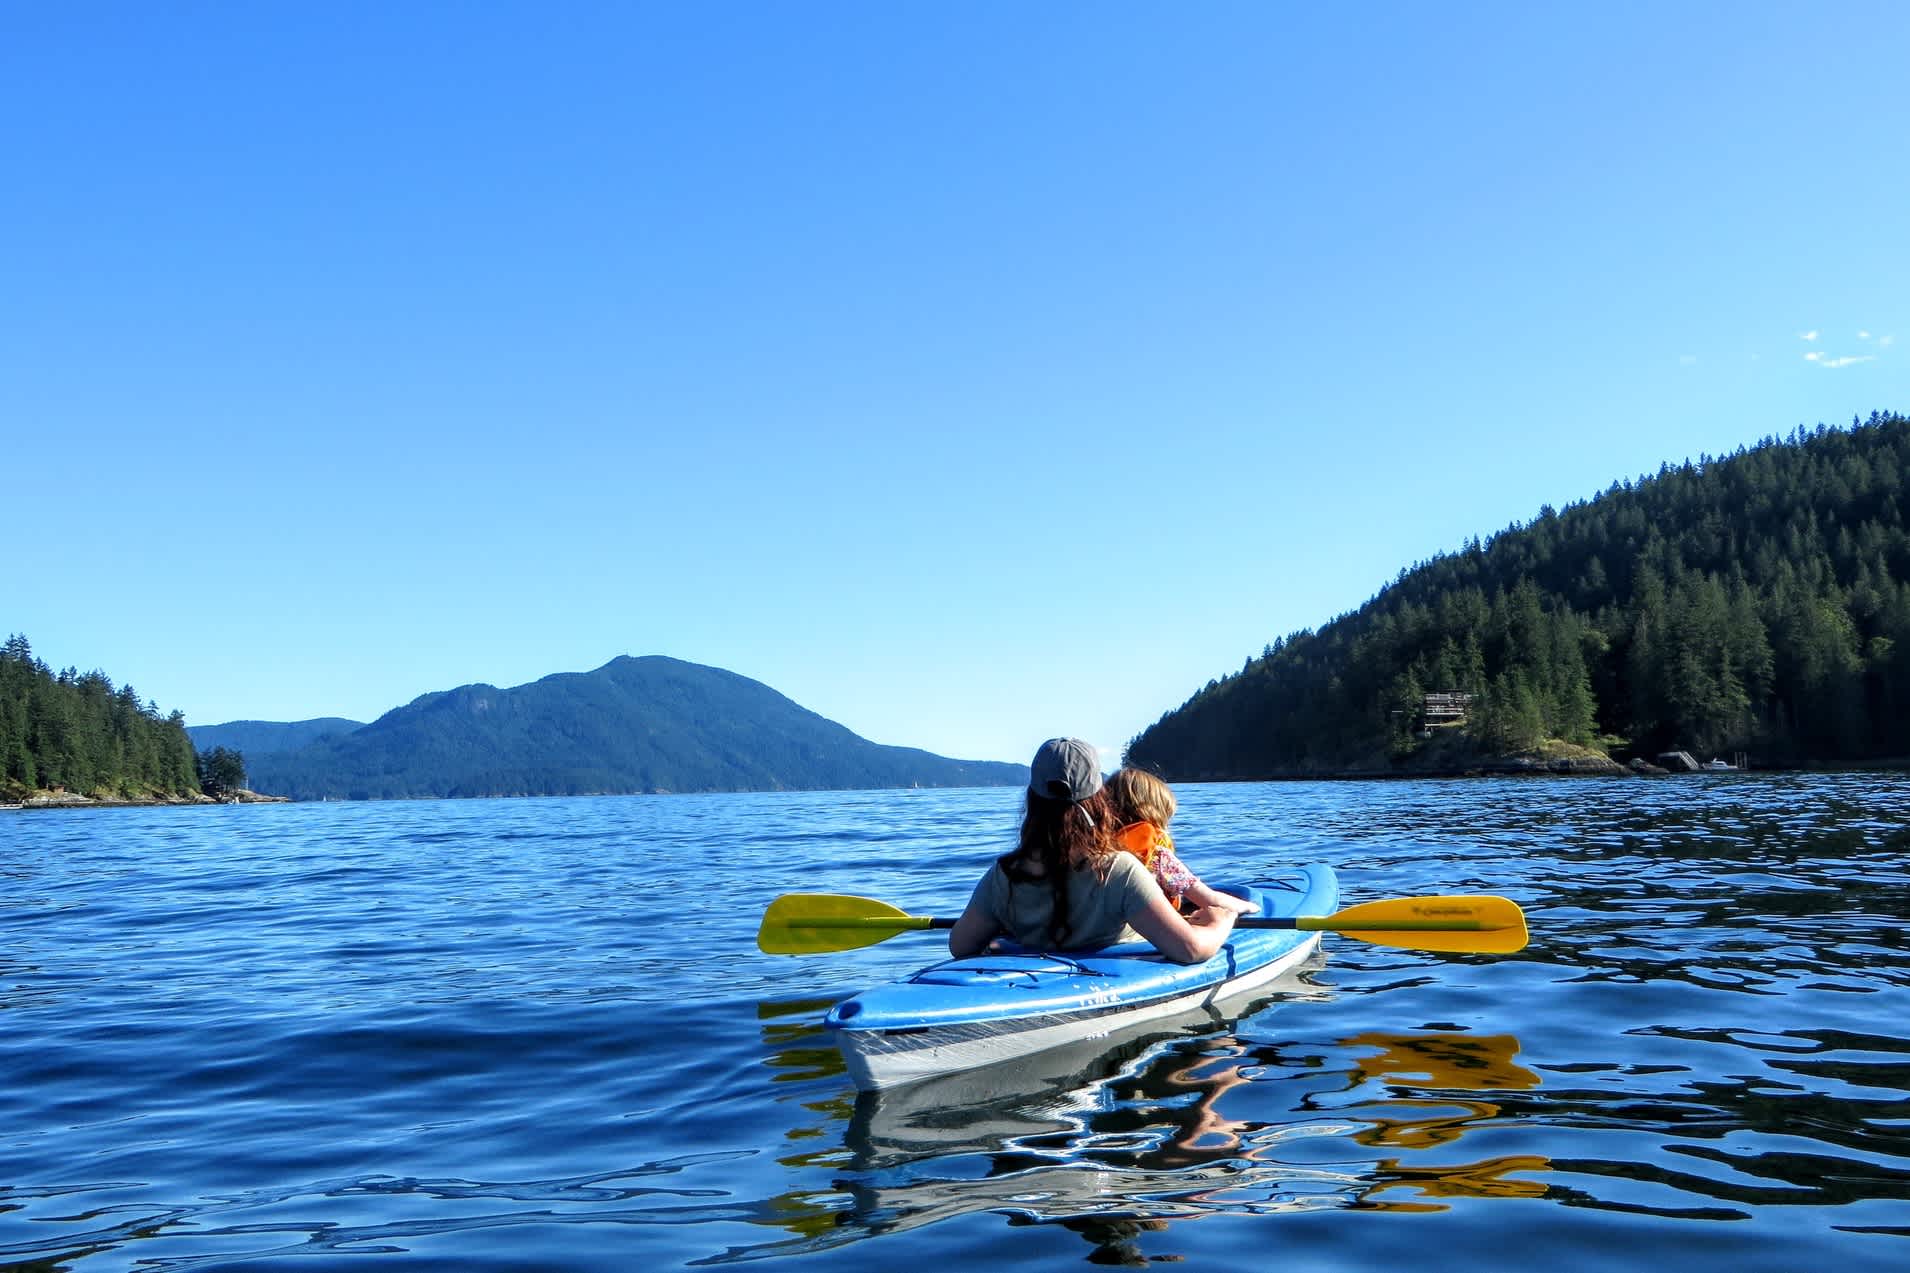 Une mère et sa fille lors d'une sortie en kayak à l'extérieur de Vancouver, Colombie-Britannique, Canada.

